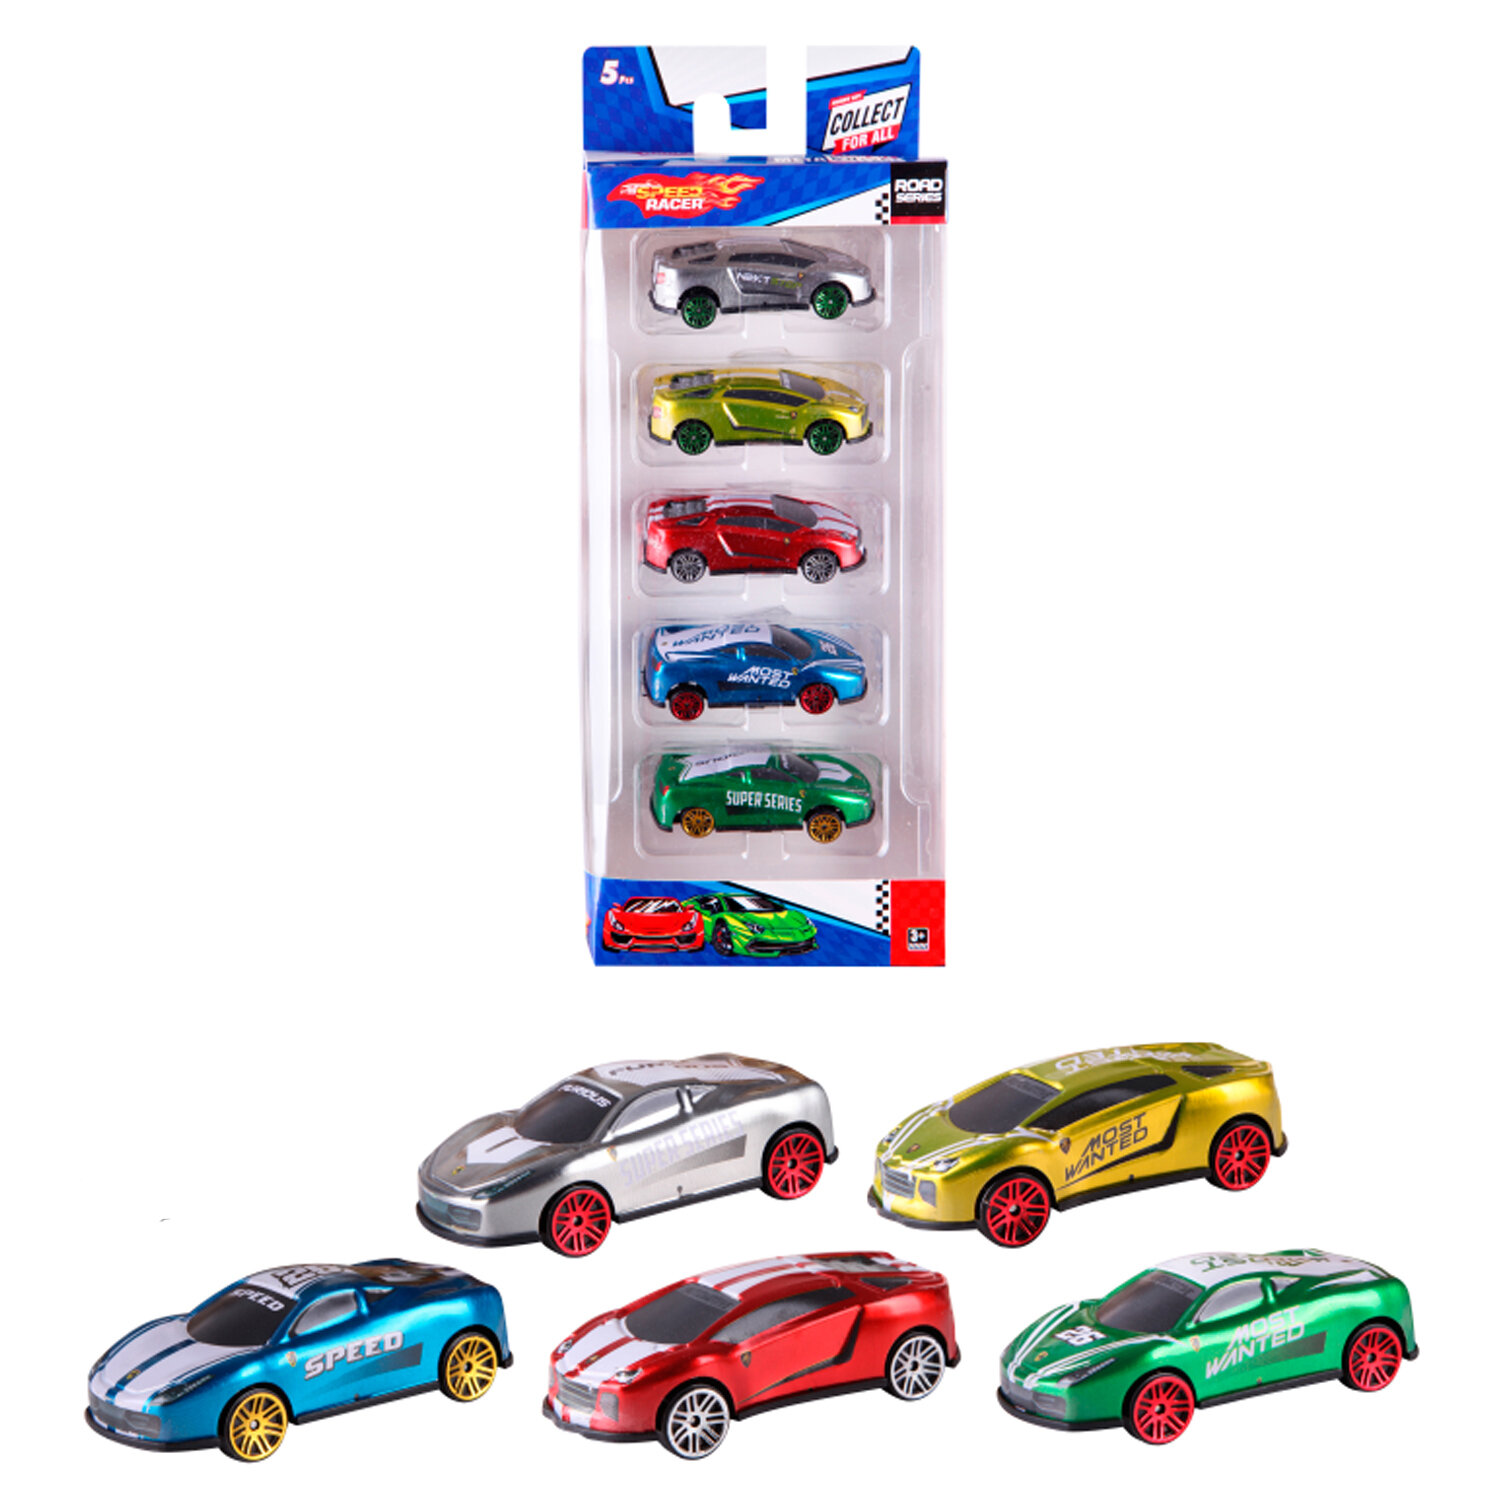 Набор из 5 игрушечных машинок Speed Racer (металлических), серия Road Series, цвета в ассортименте, возраст 3+